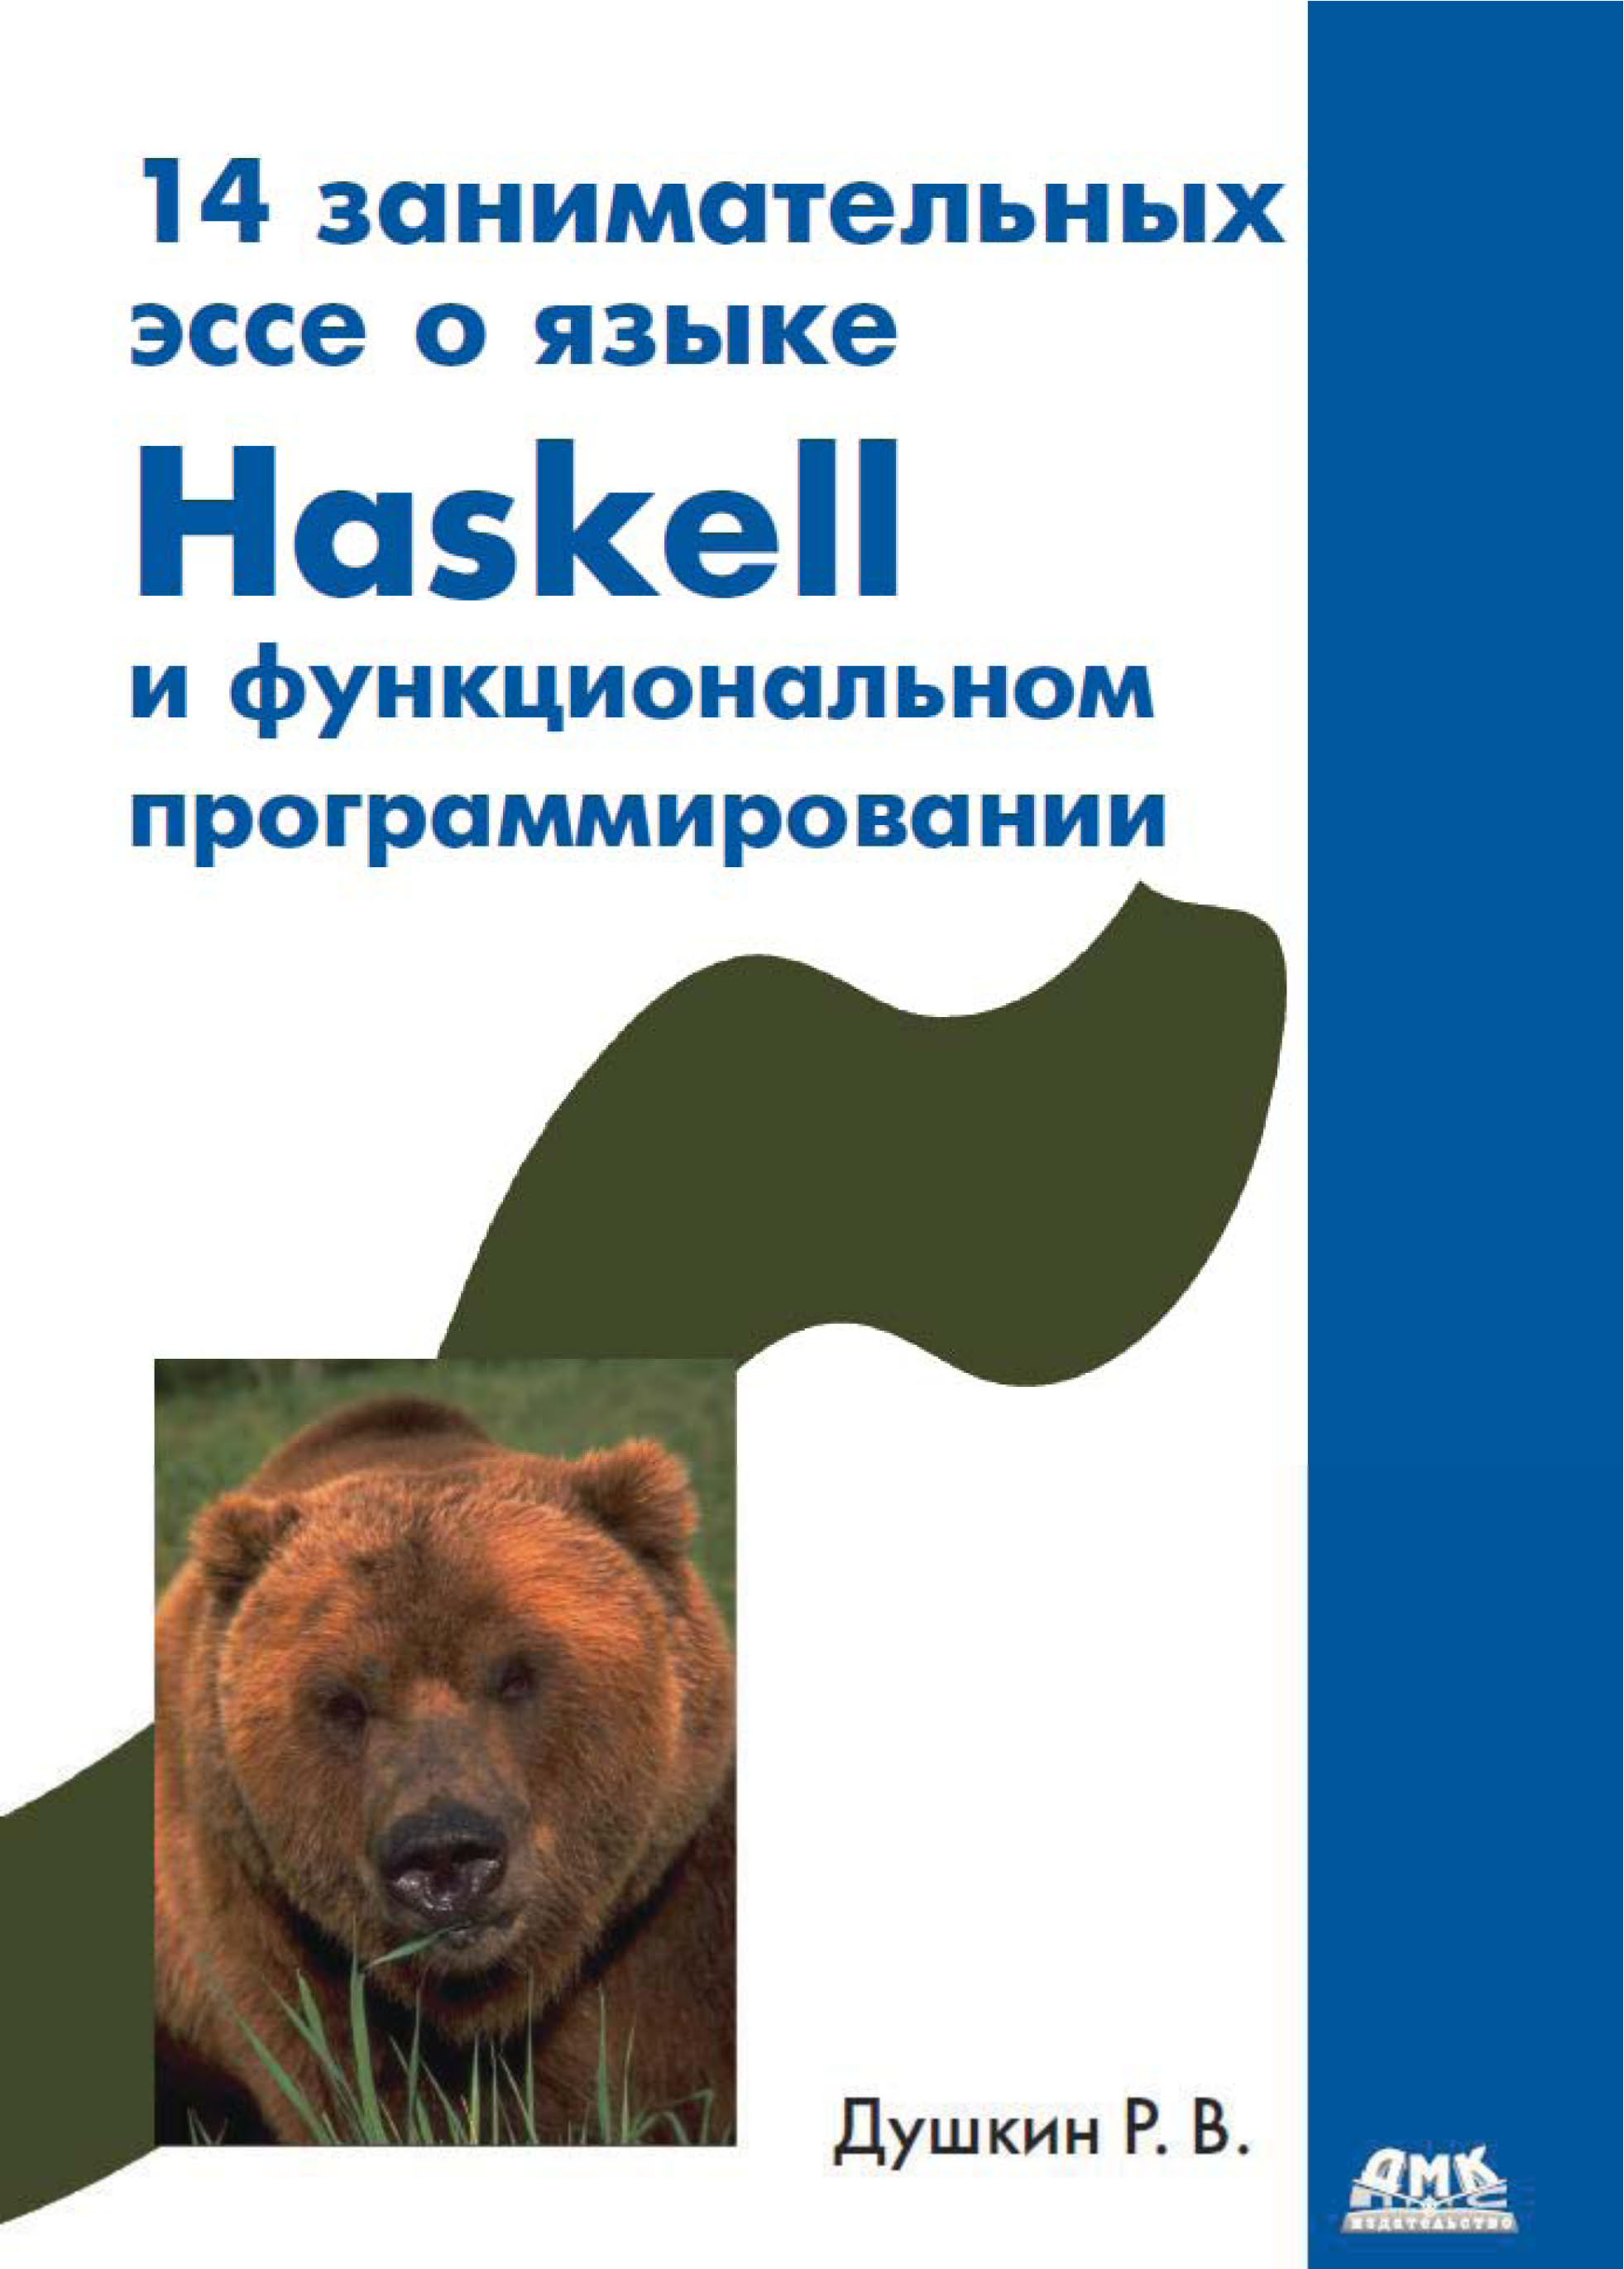 Книга  14 занимательных эссе о языке Haskell и функциональном программировании созданная Р. В. Душкин может относится к жанру программирование. Стоимость электронной книги 14 занимательных эссе о языке Haskell и функциональном программировании с идентификатором 22075402 составляет 119.00 руб.